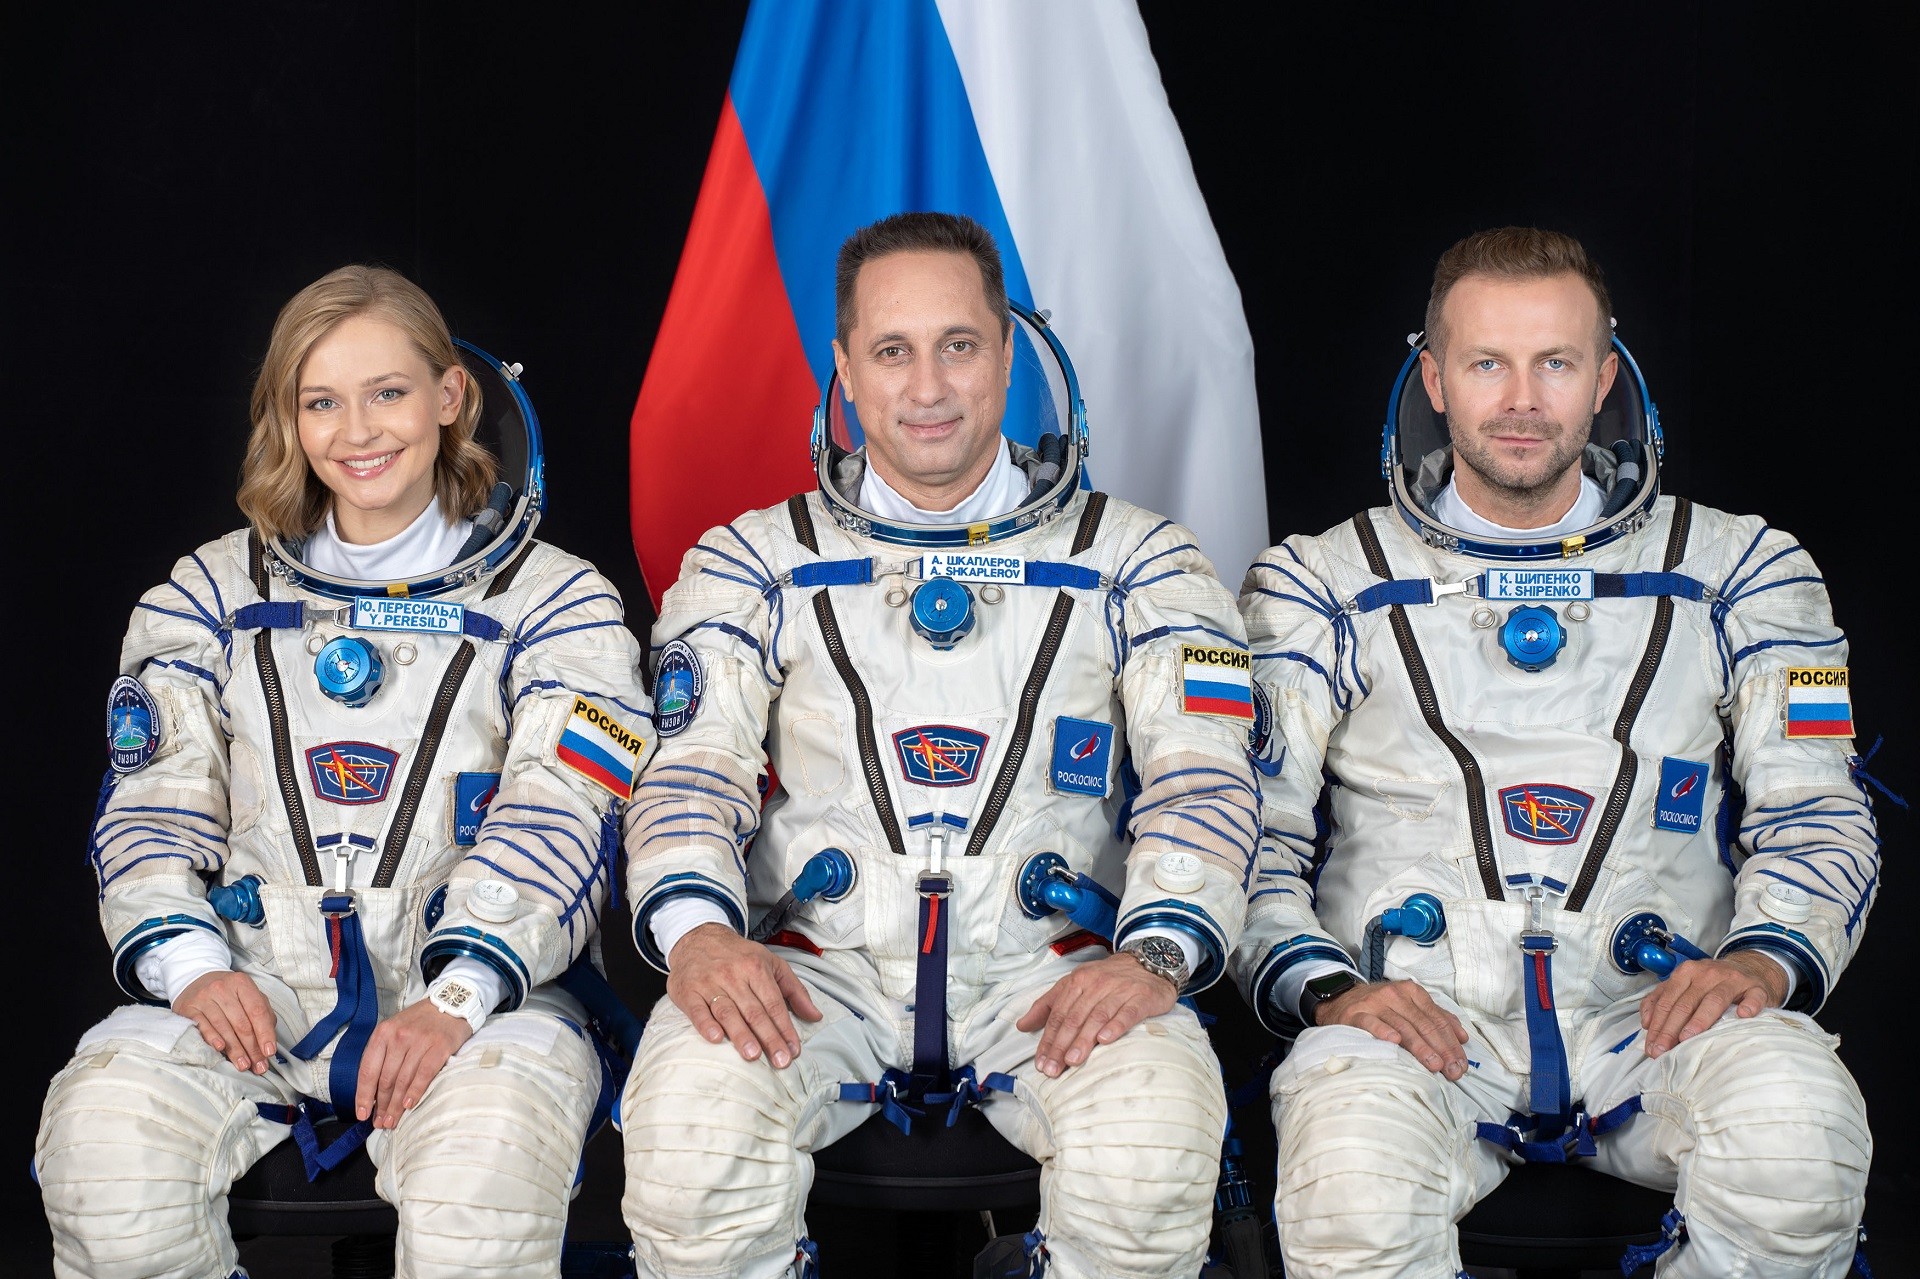 Iúlia Peresild, Anton Chkaplerov e Klim Chipenko em retratado tirado no Centro de  Treinamento de Cosmonautas Gagárin, na Rússia